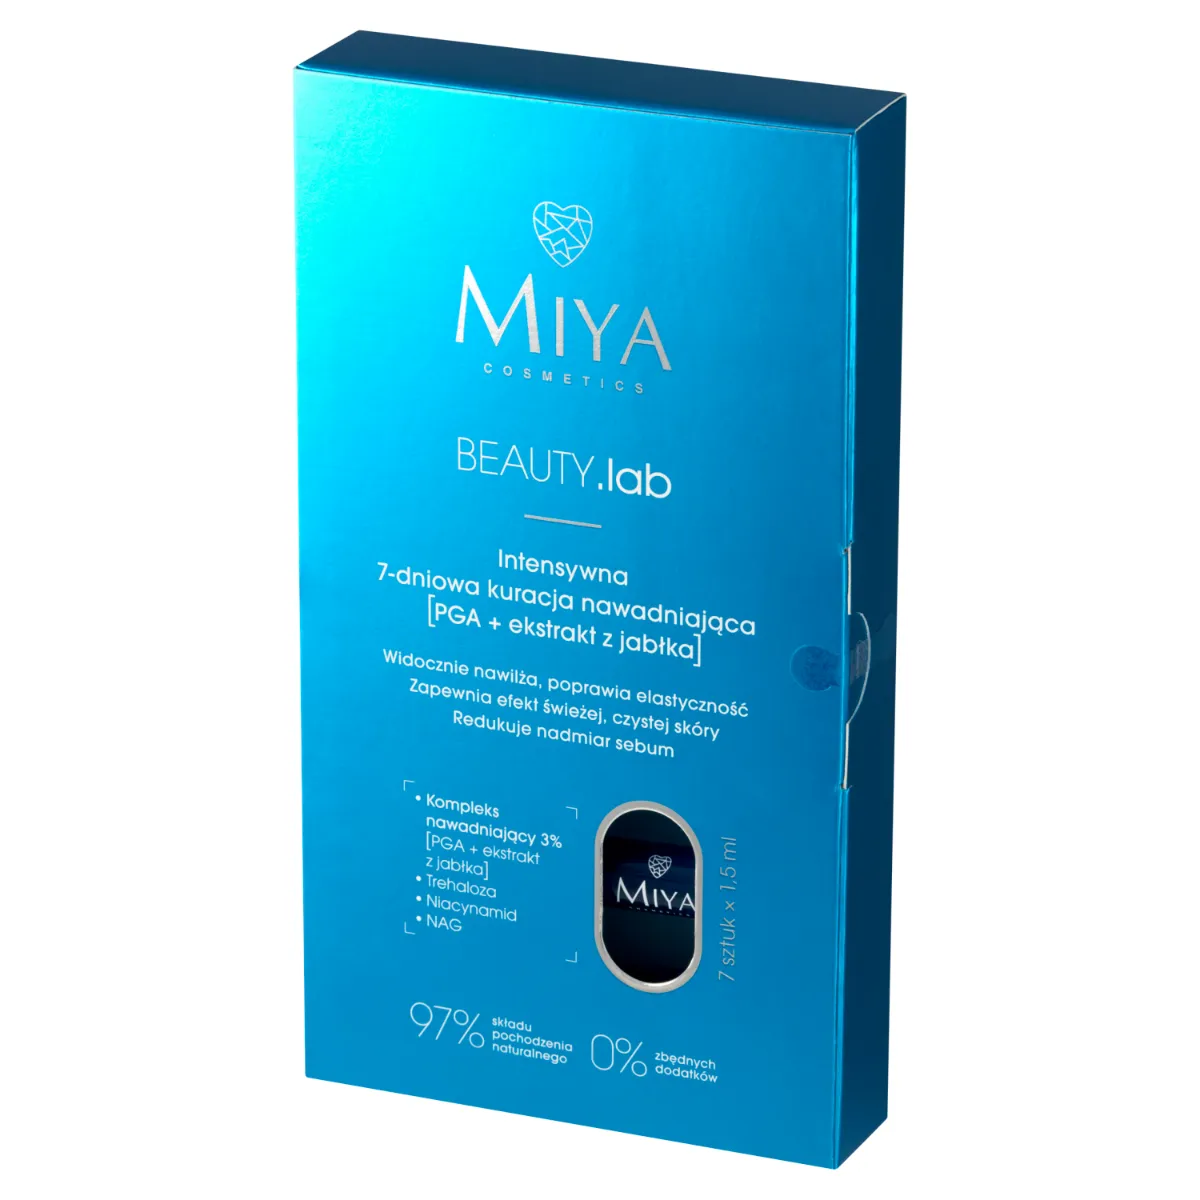 Miya Cosmetics BEAUTY.lab Intensywna 7-dniowa kuracja nawadniająca, 7 x 1,5 ml 